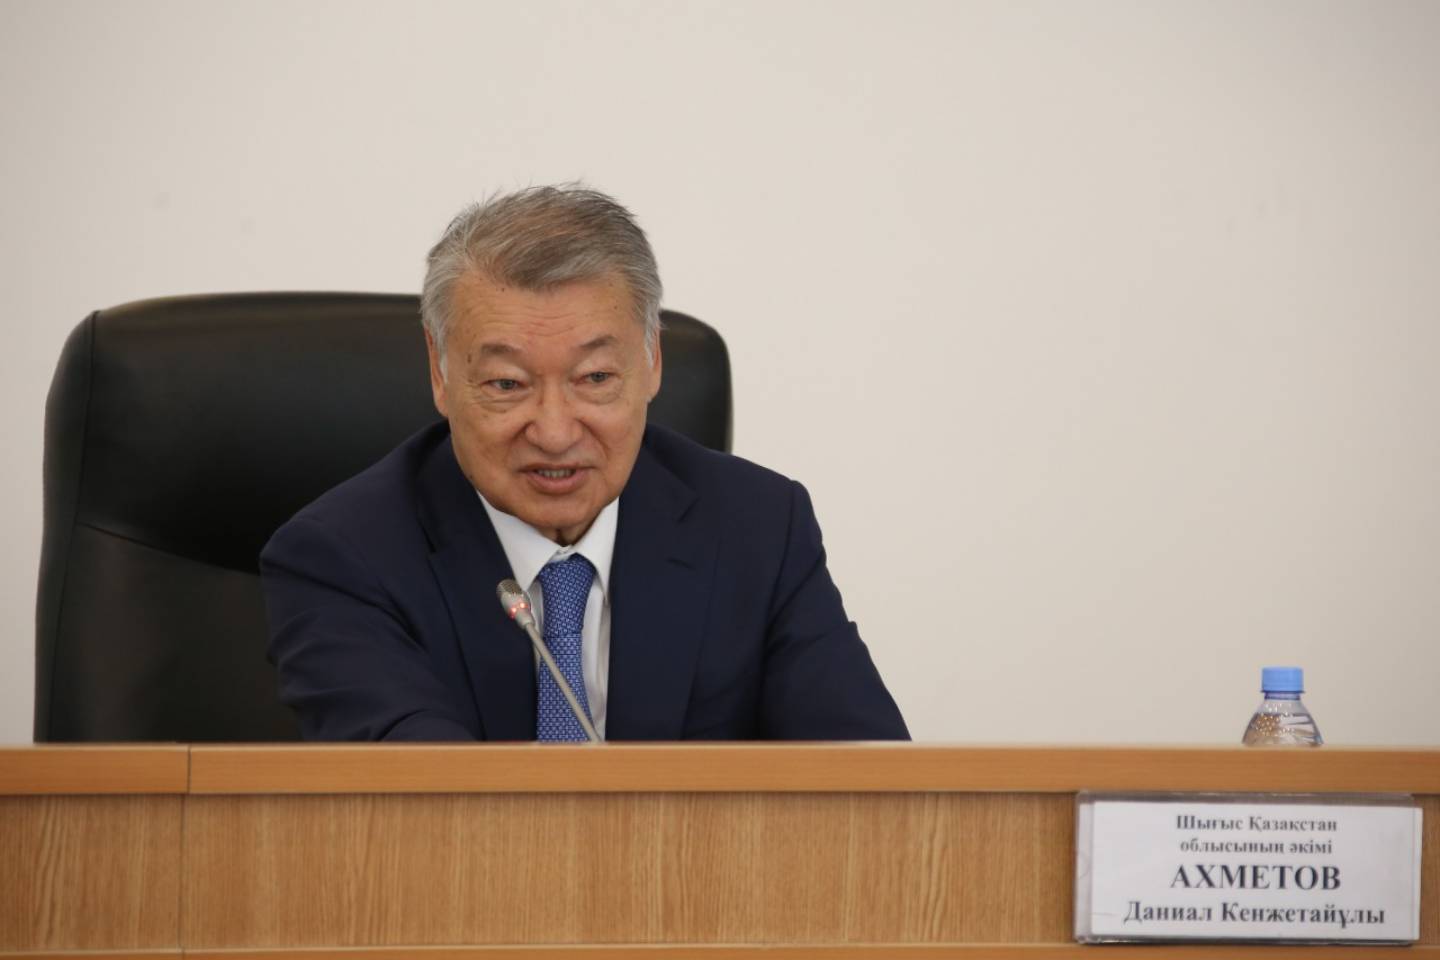 Новости Казахстана / Общество в Казахстане / Сколько средств из госбюджета ВКО потратили на развитие отделяемого региона?